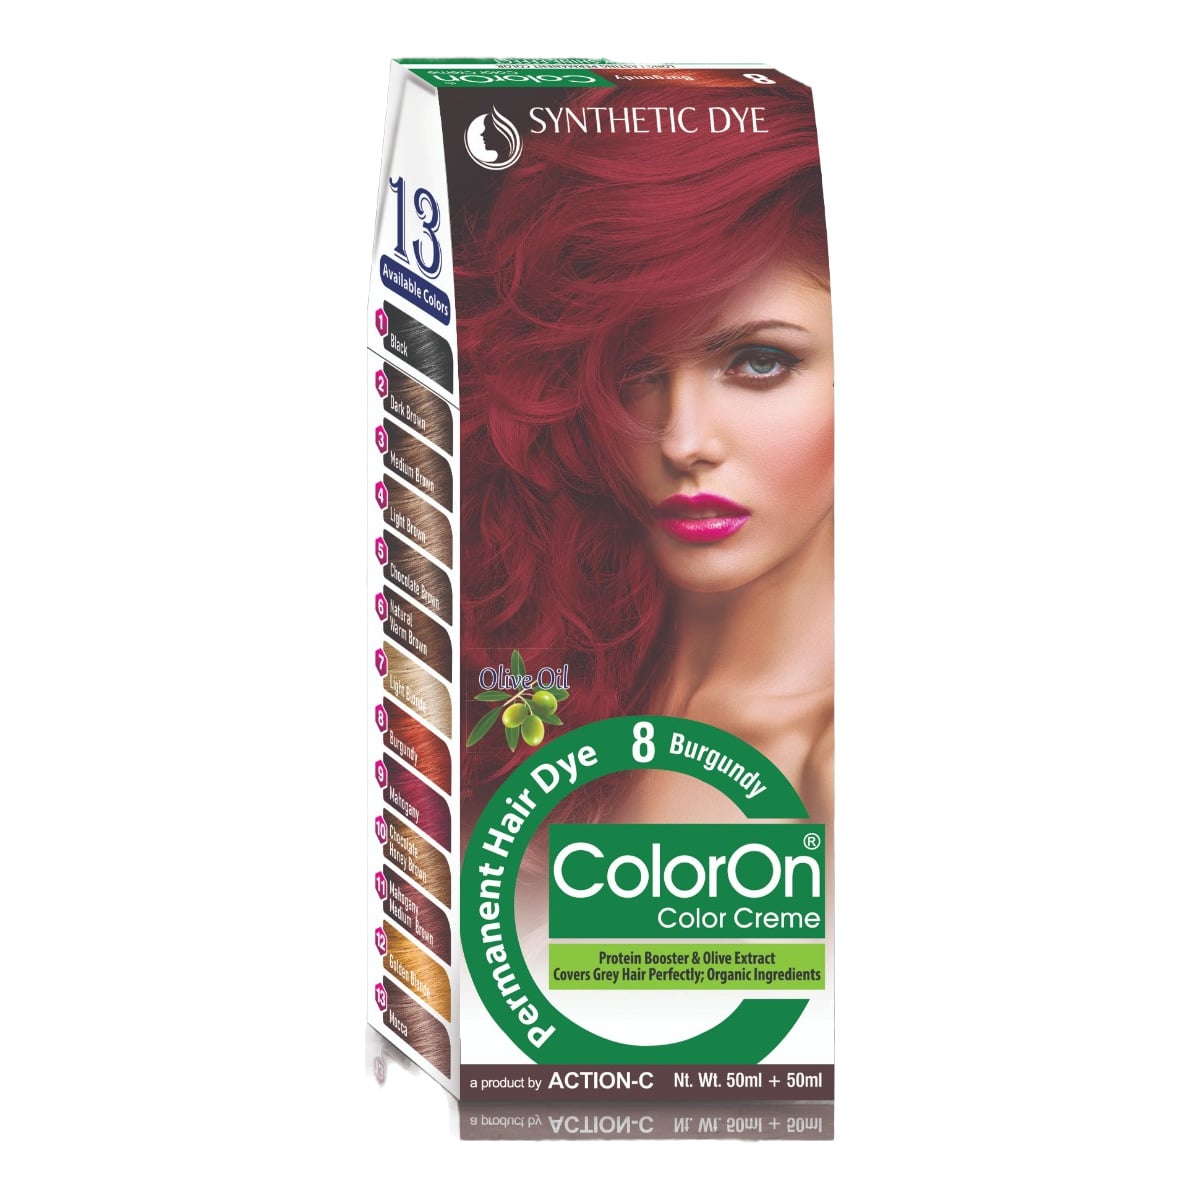 Coloron Permanent Hair Dye #8 (Burgundy) – 